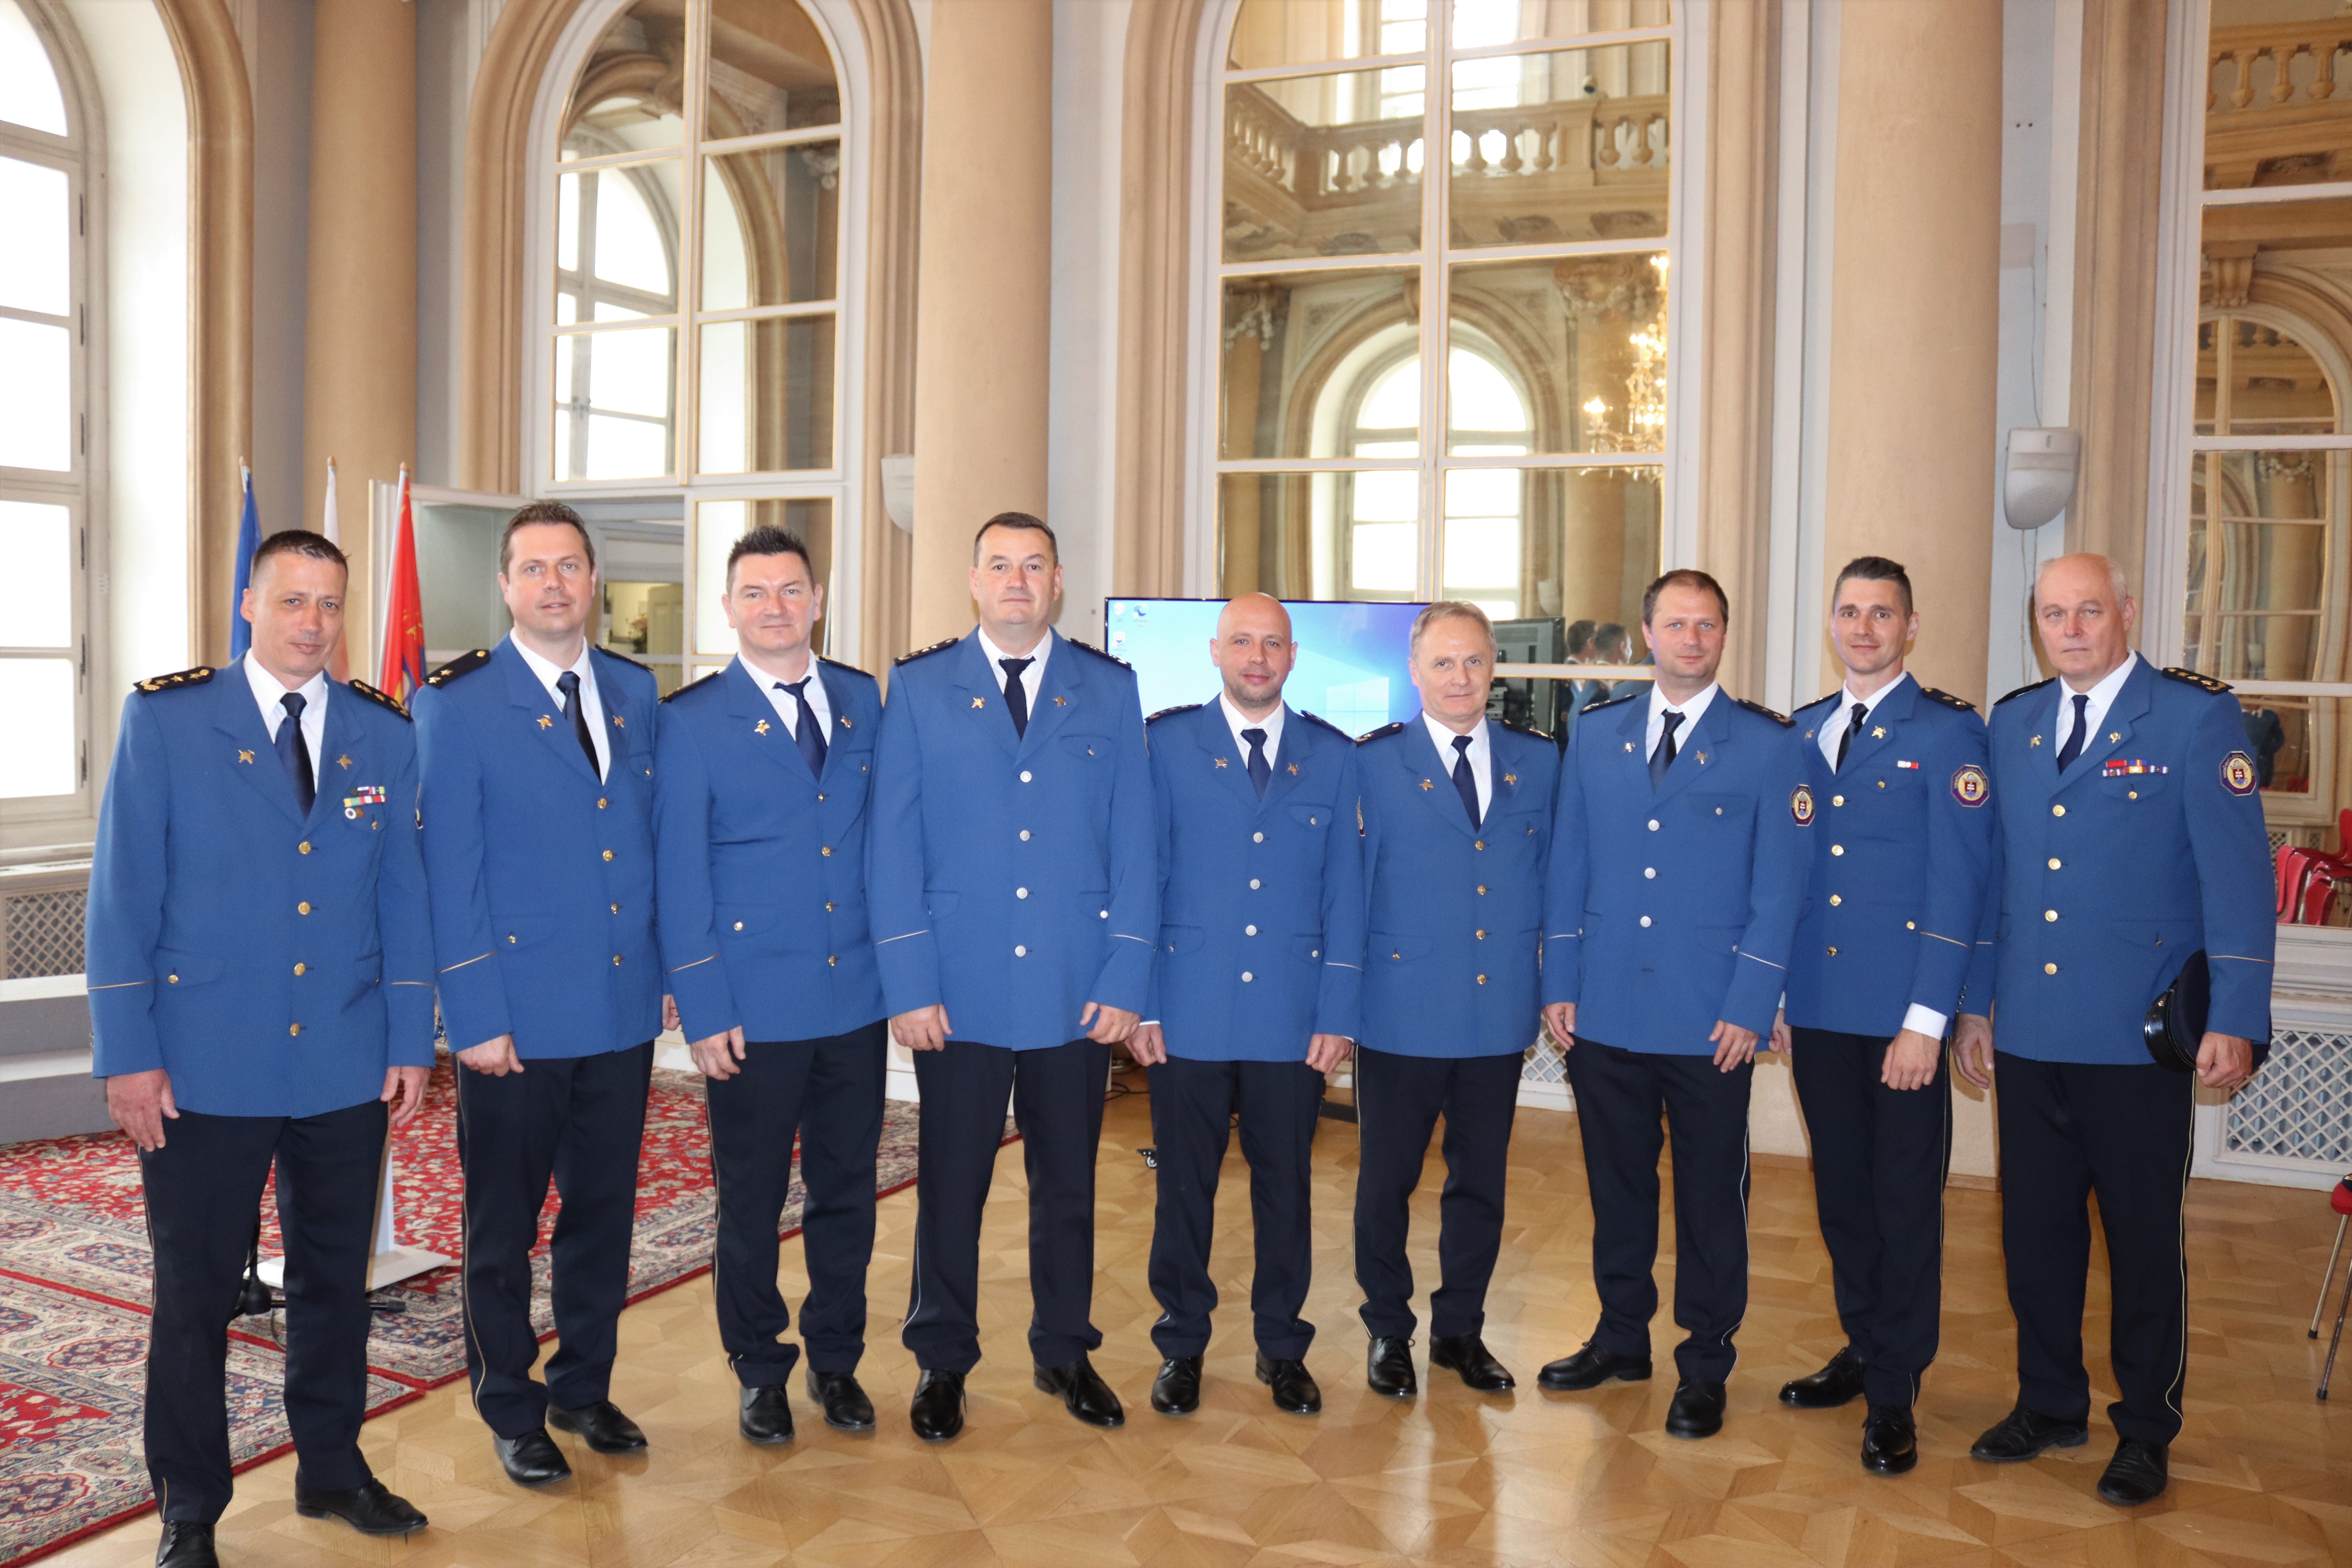 01 - Ocenenia si prebrali aj príslušníci Krajského riaditeľstva Hasičského a záchranného zboru v Bratislave